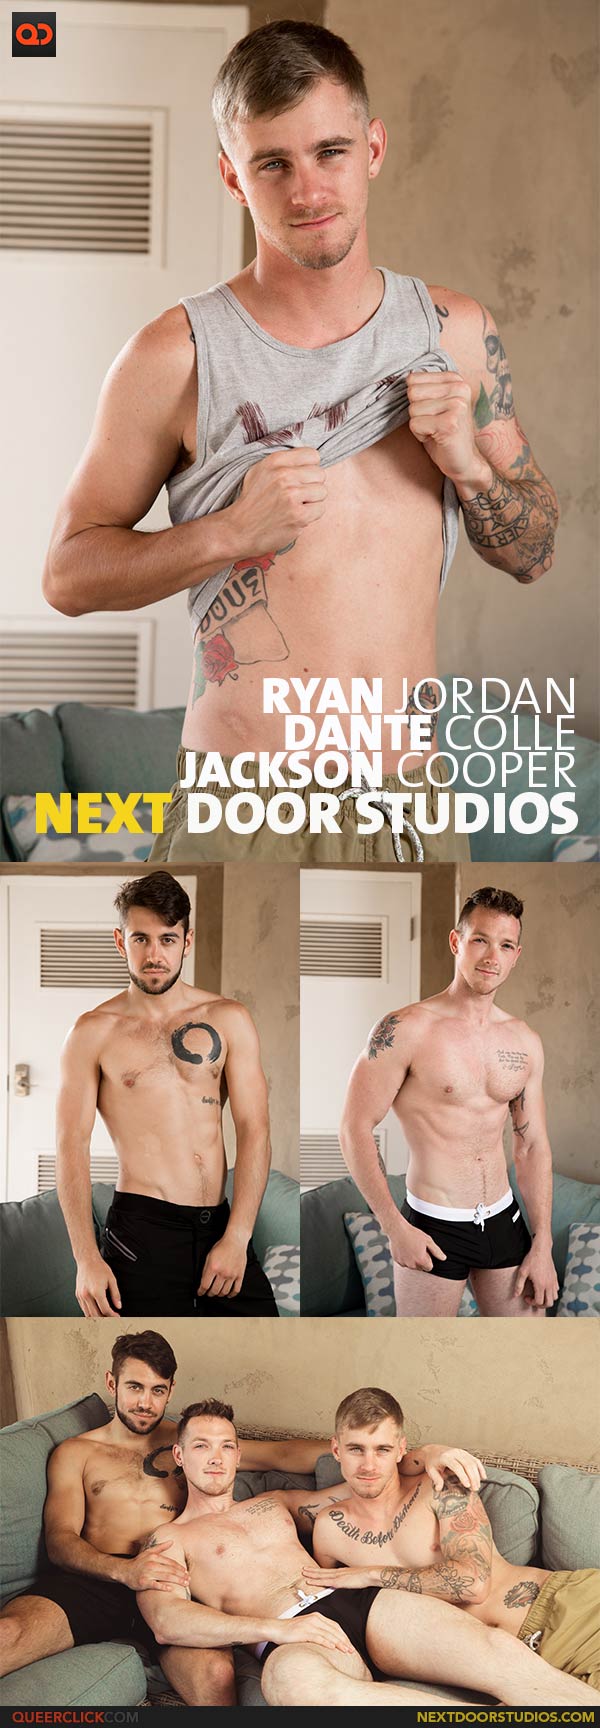 Next Door Studios: Dante Colle, Ryan Jordan and Jackson Cooper